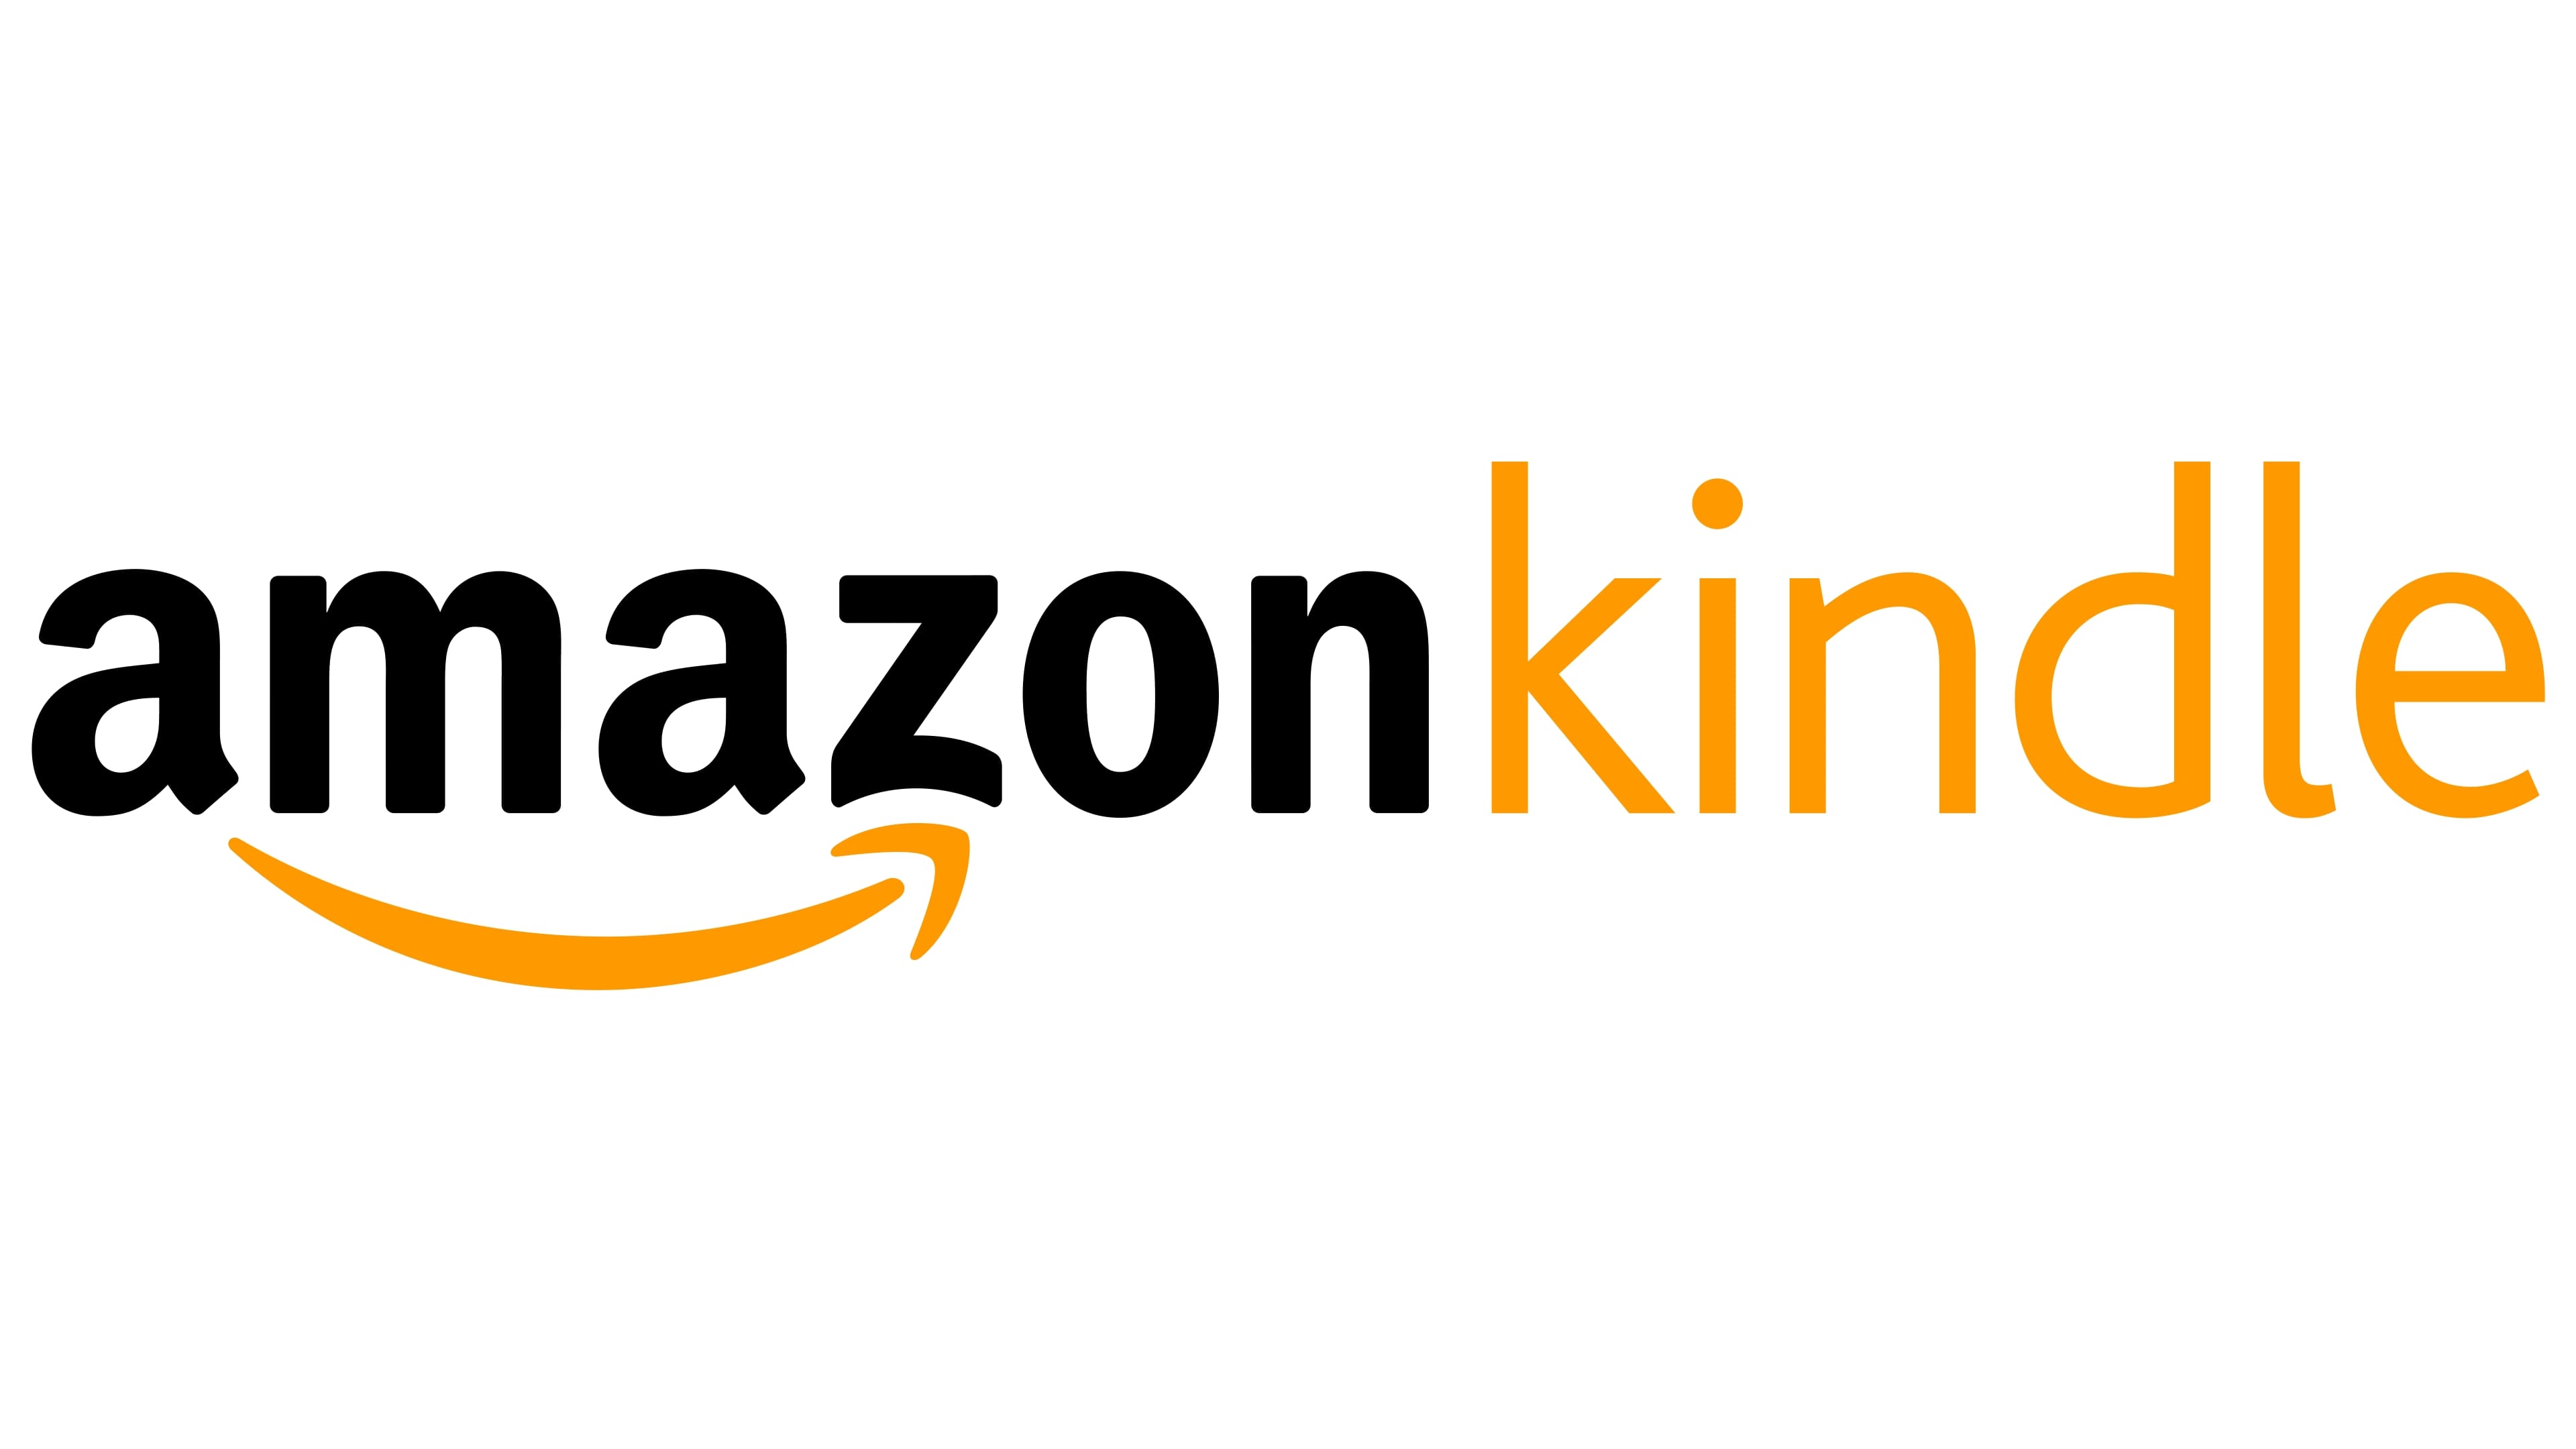 amazon kindle app logo